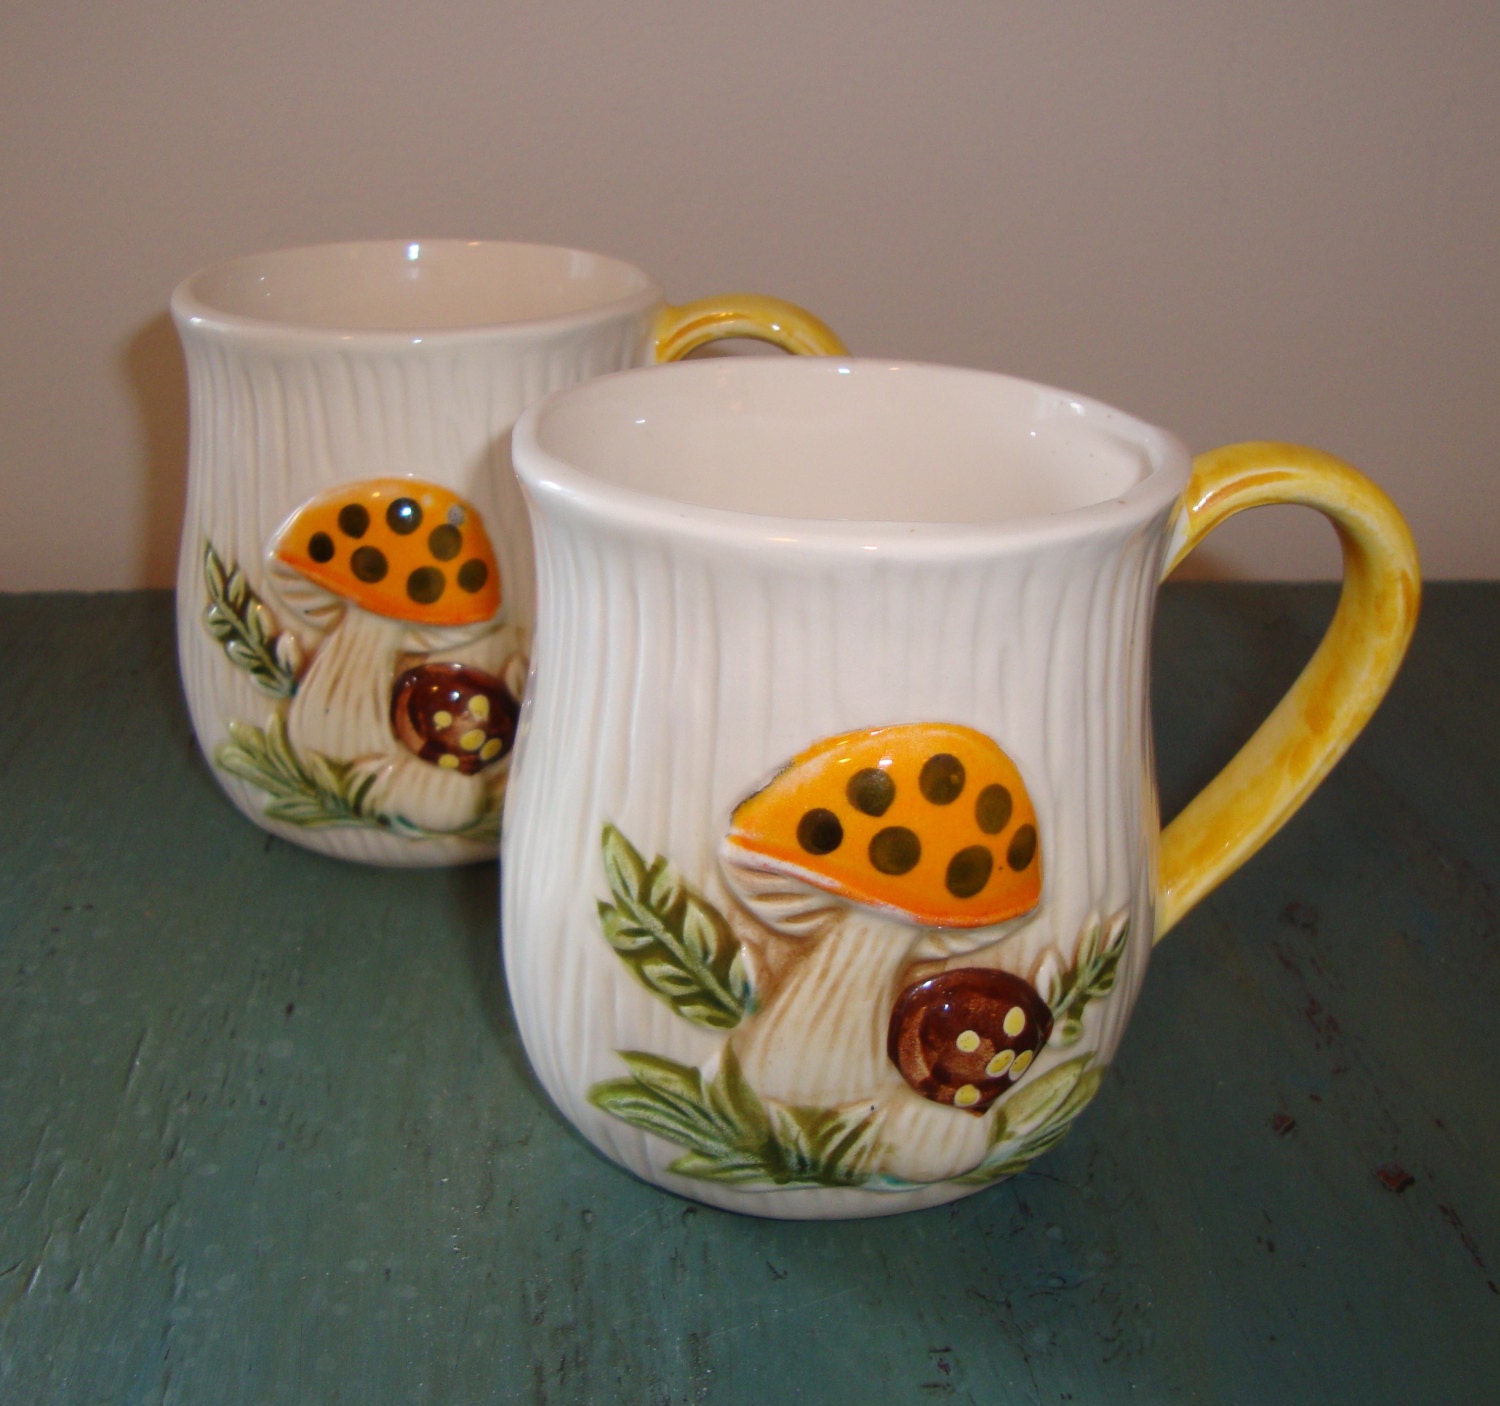  Vintage  Mushroom Ceramic Mugs  Coffee Cups Merry